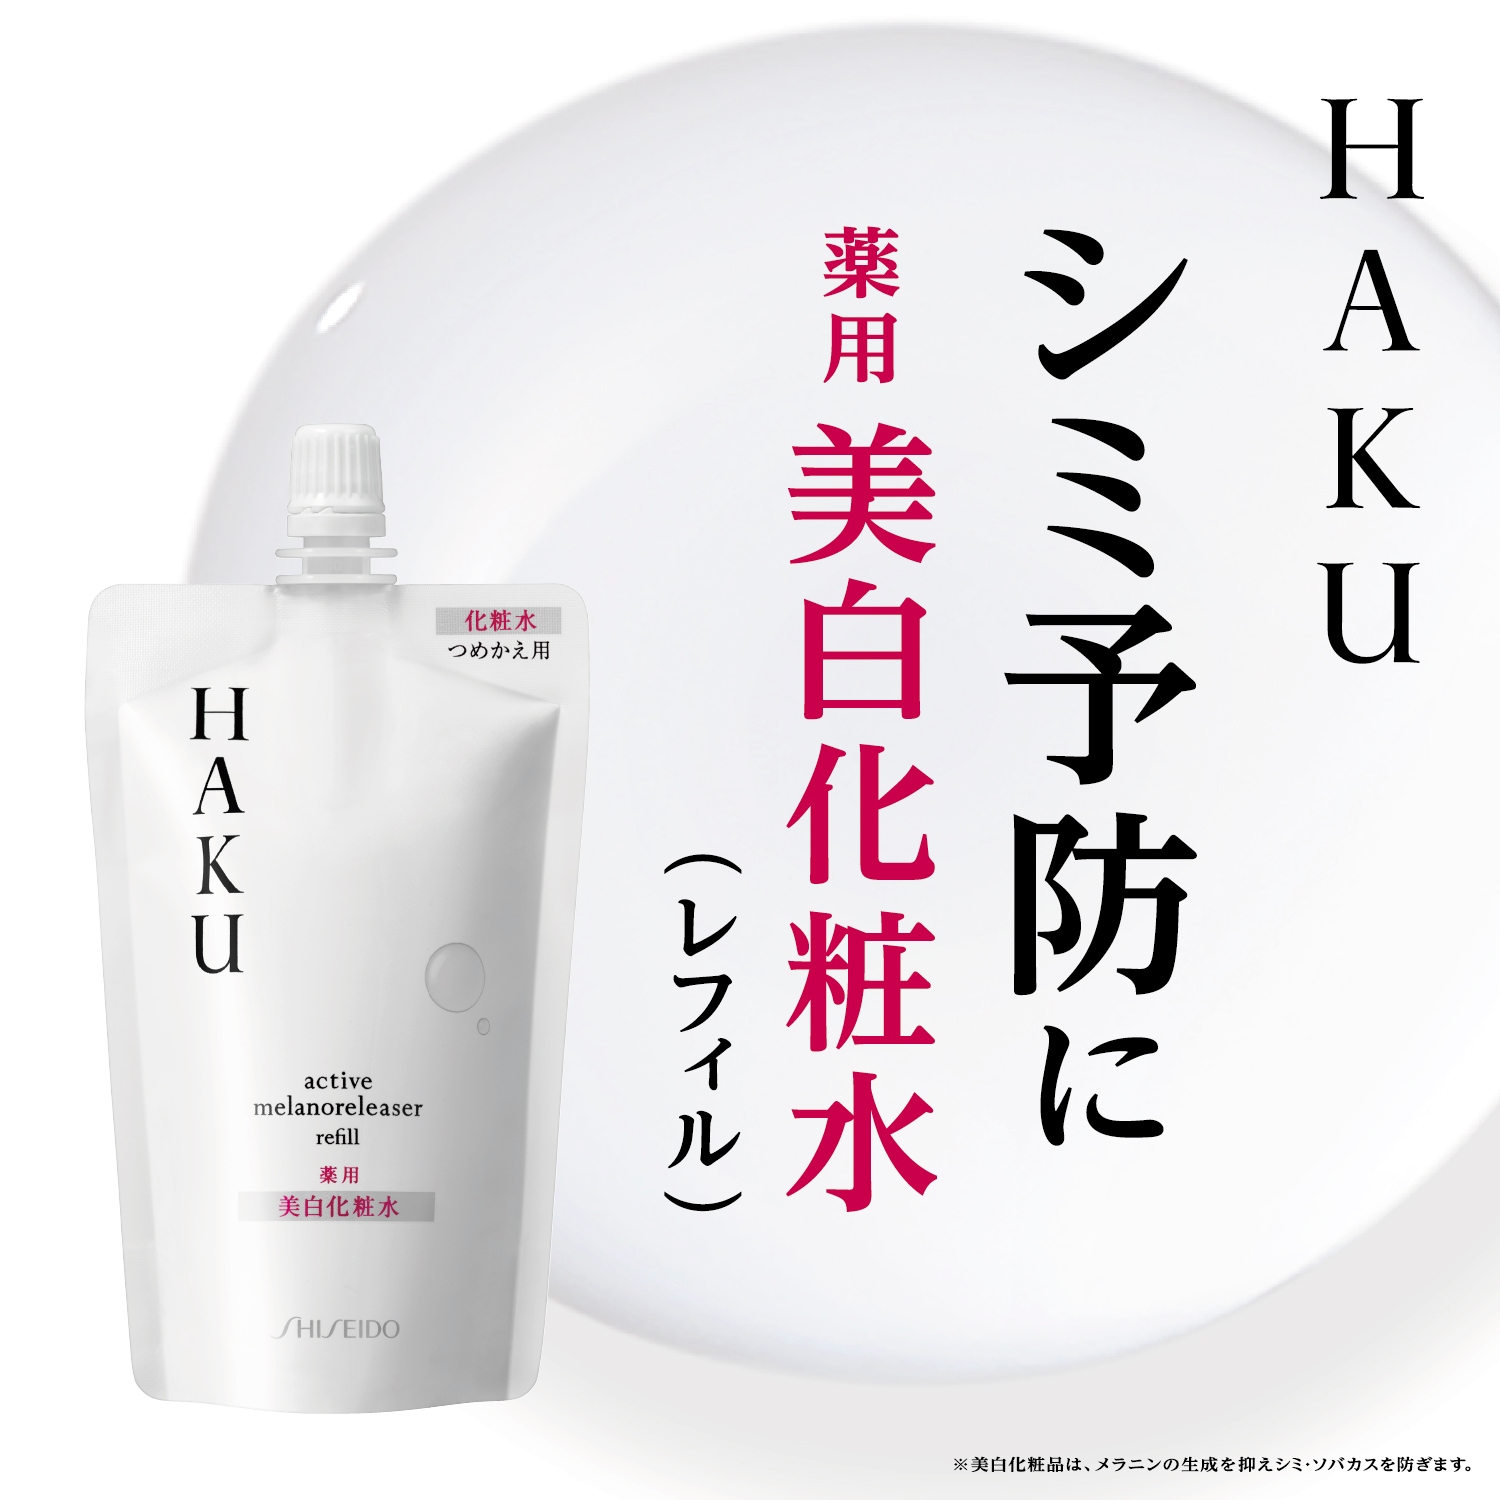 資生堂 HAKU アクティブメラノリリーサー つめかえ用 薬用 美白化粧水